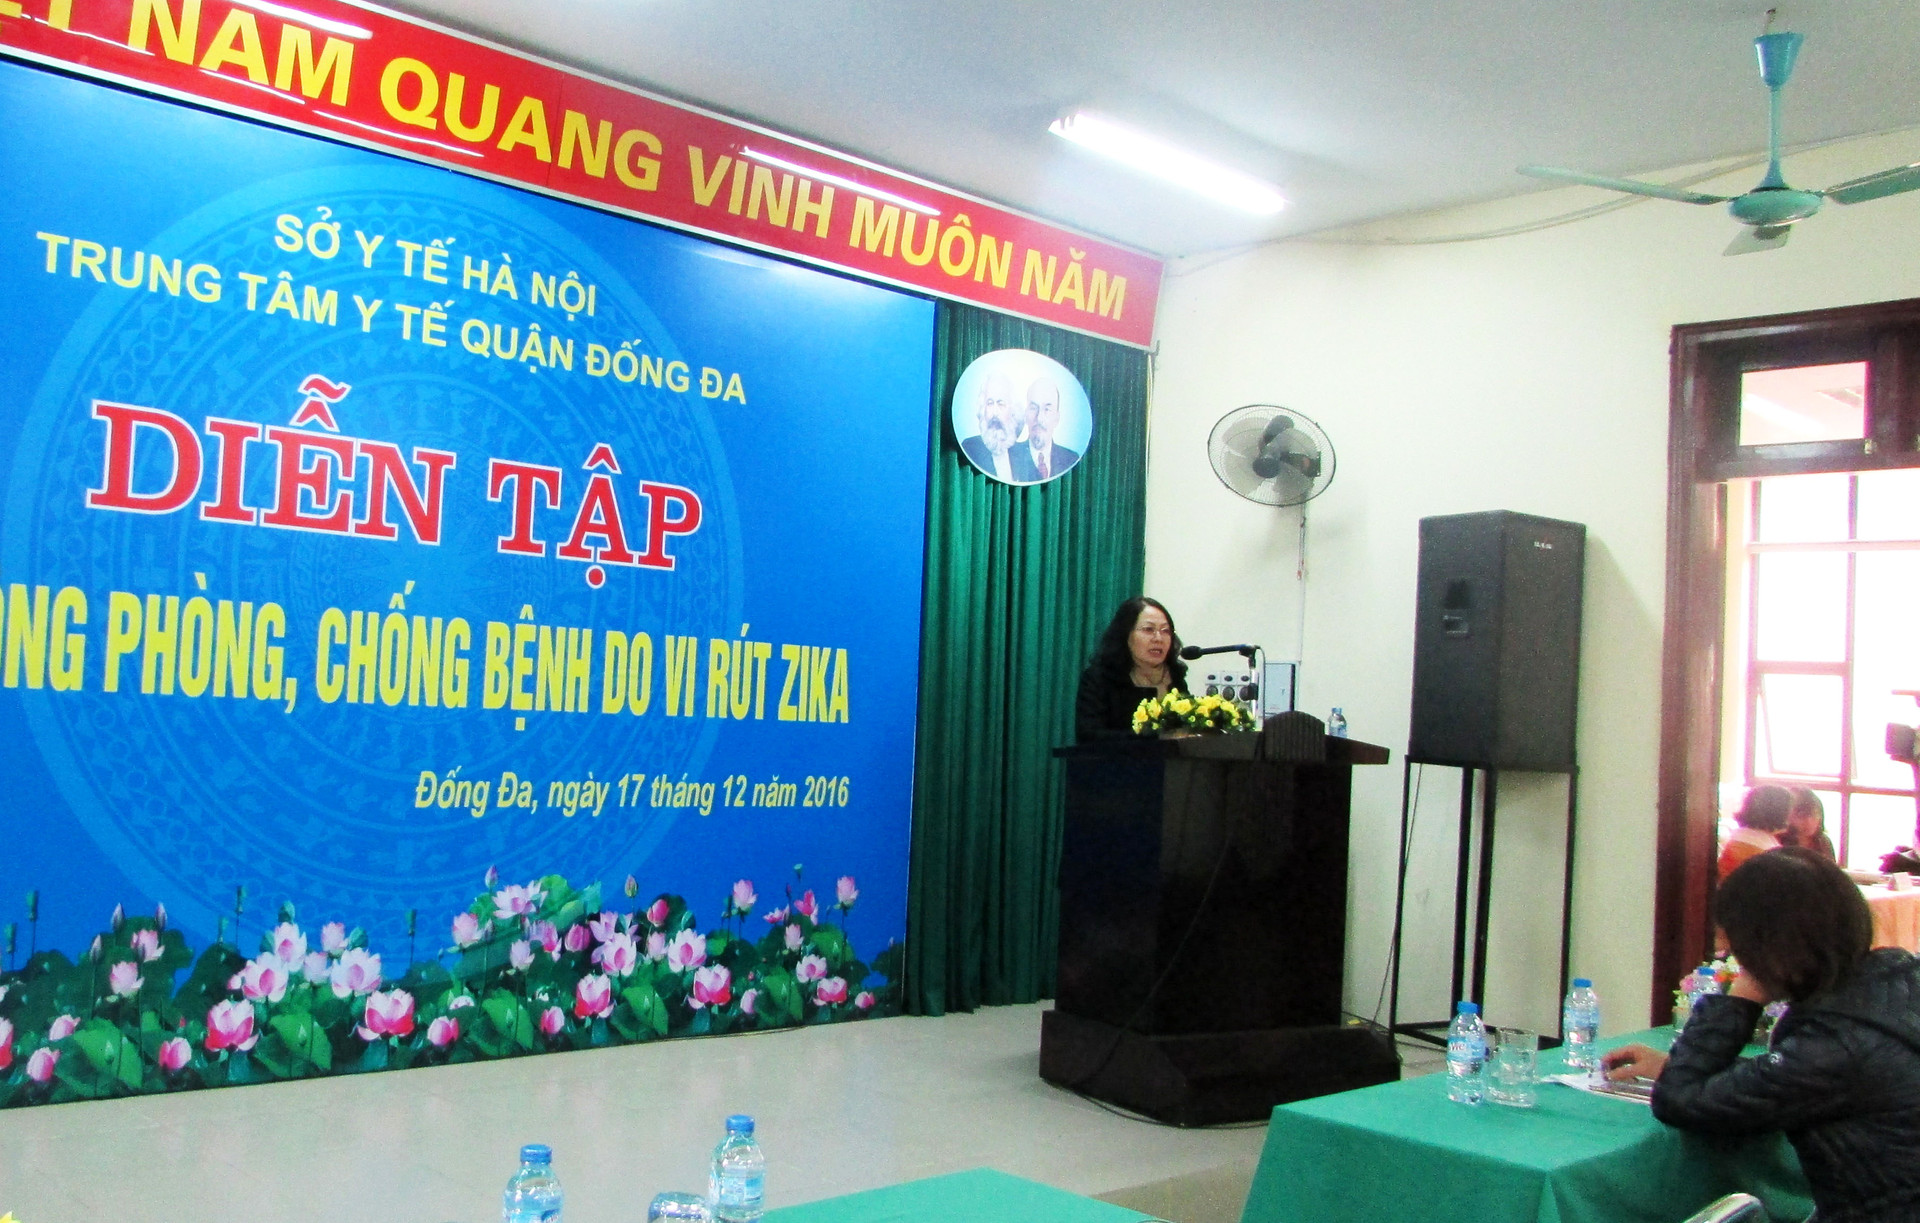 Hà Nội: Diễn tập chủ động phòng chống bệnh Zkia tại quận Đống Đa